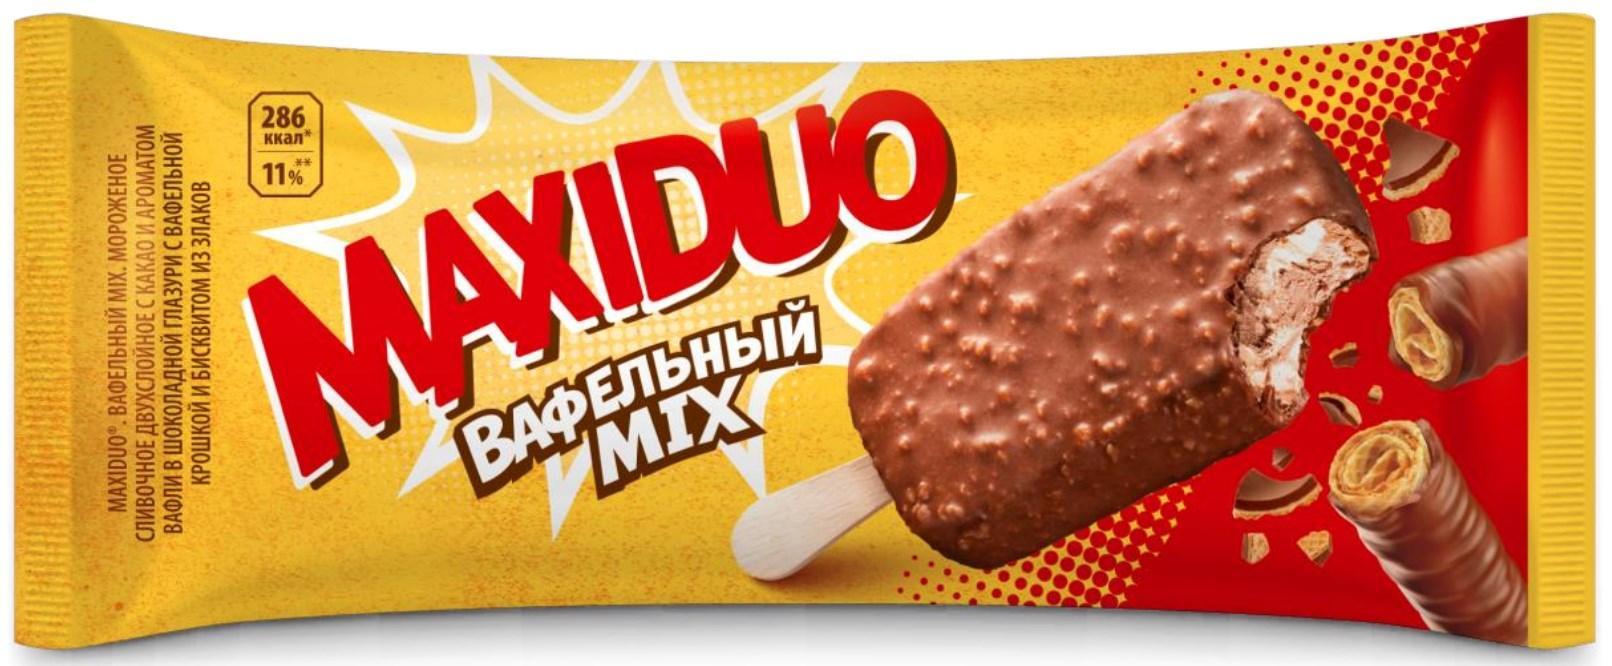 Мороженое Nestle Maxiduo эскимо вафельный mix 63 гр., флоу-пак